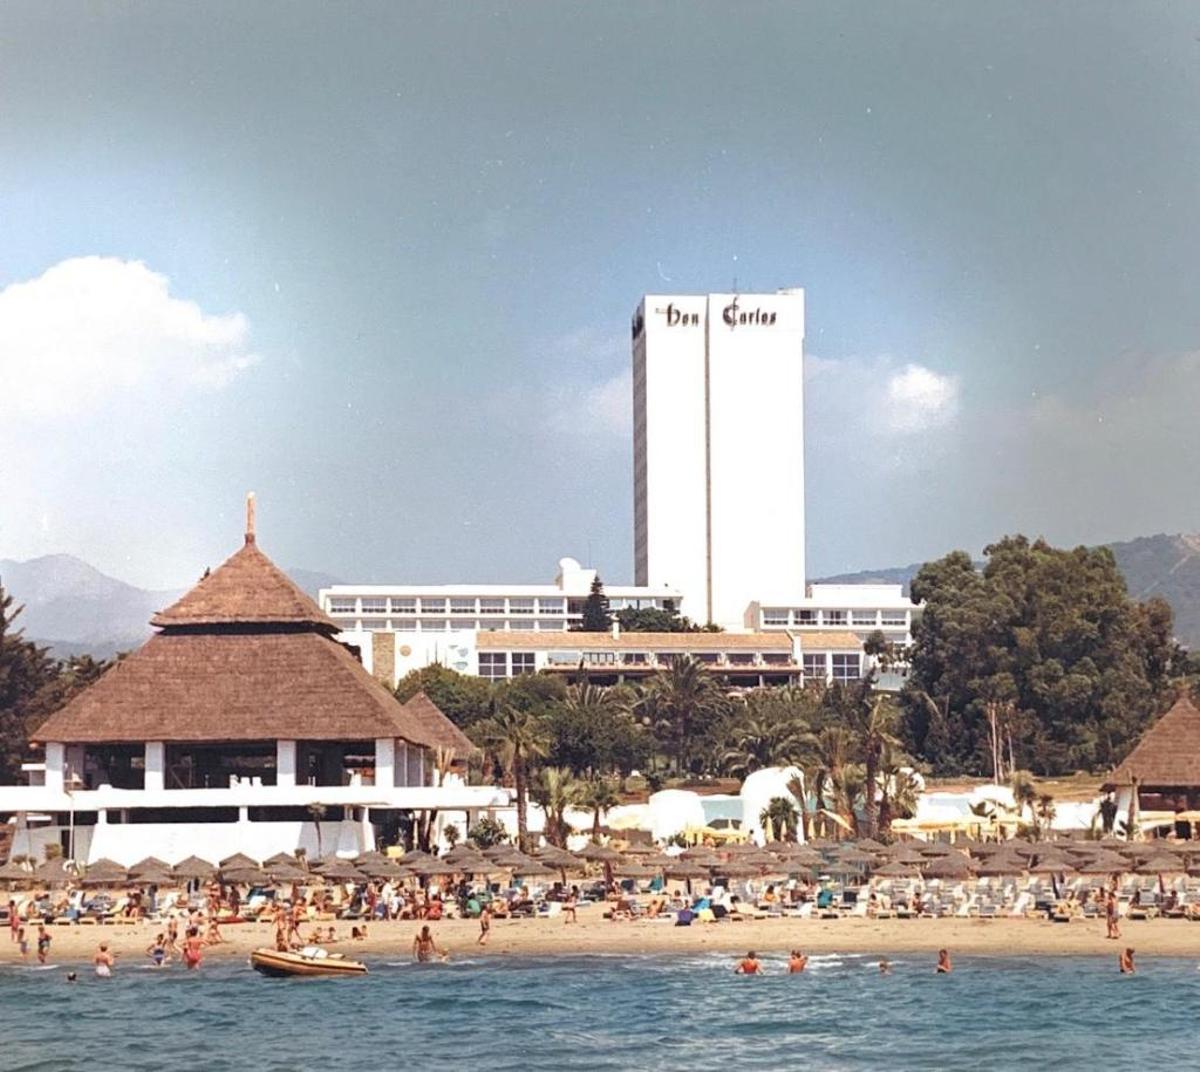 El hotel Don Carlos con la famosa torre vista desde el mar.